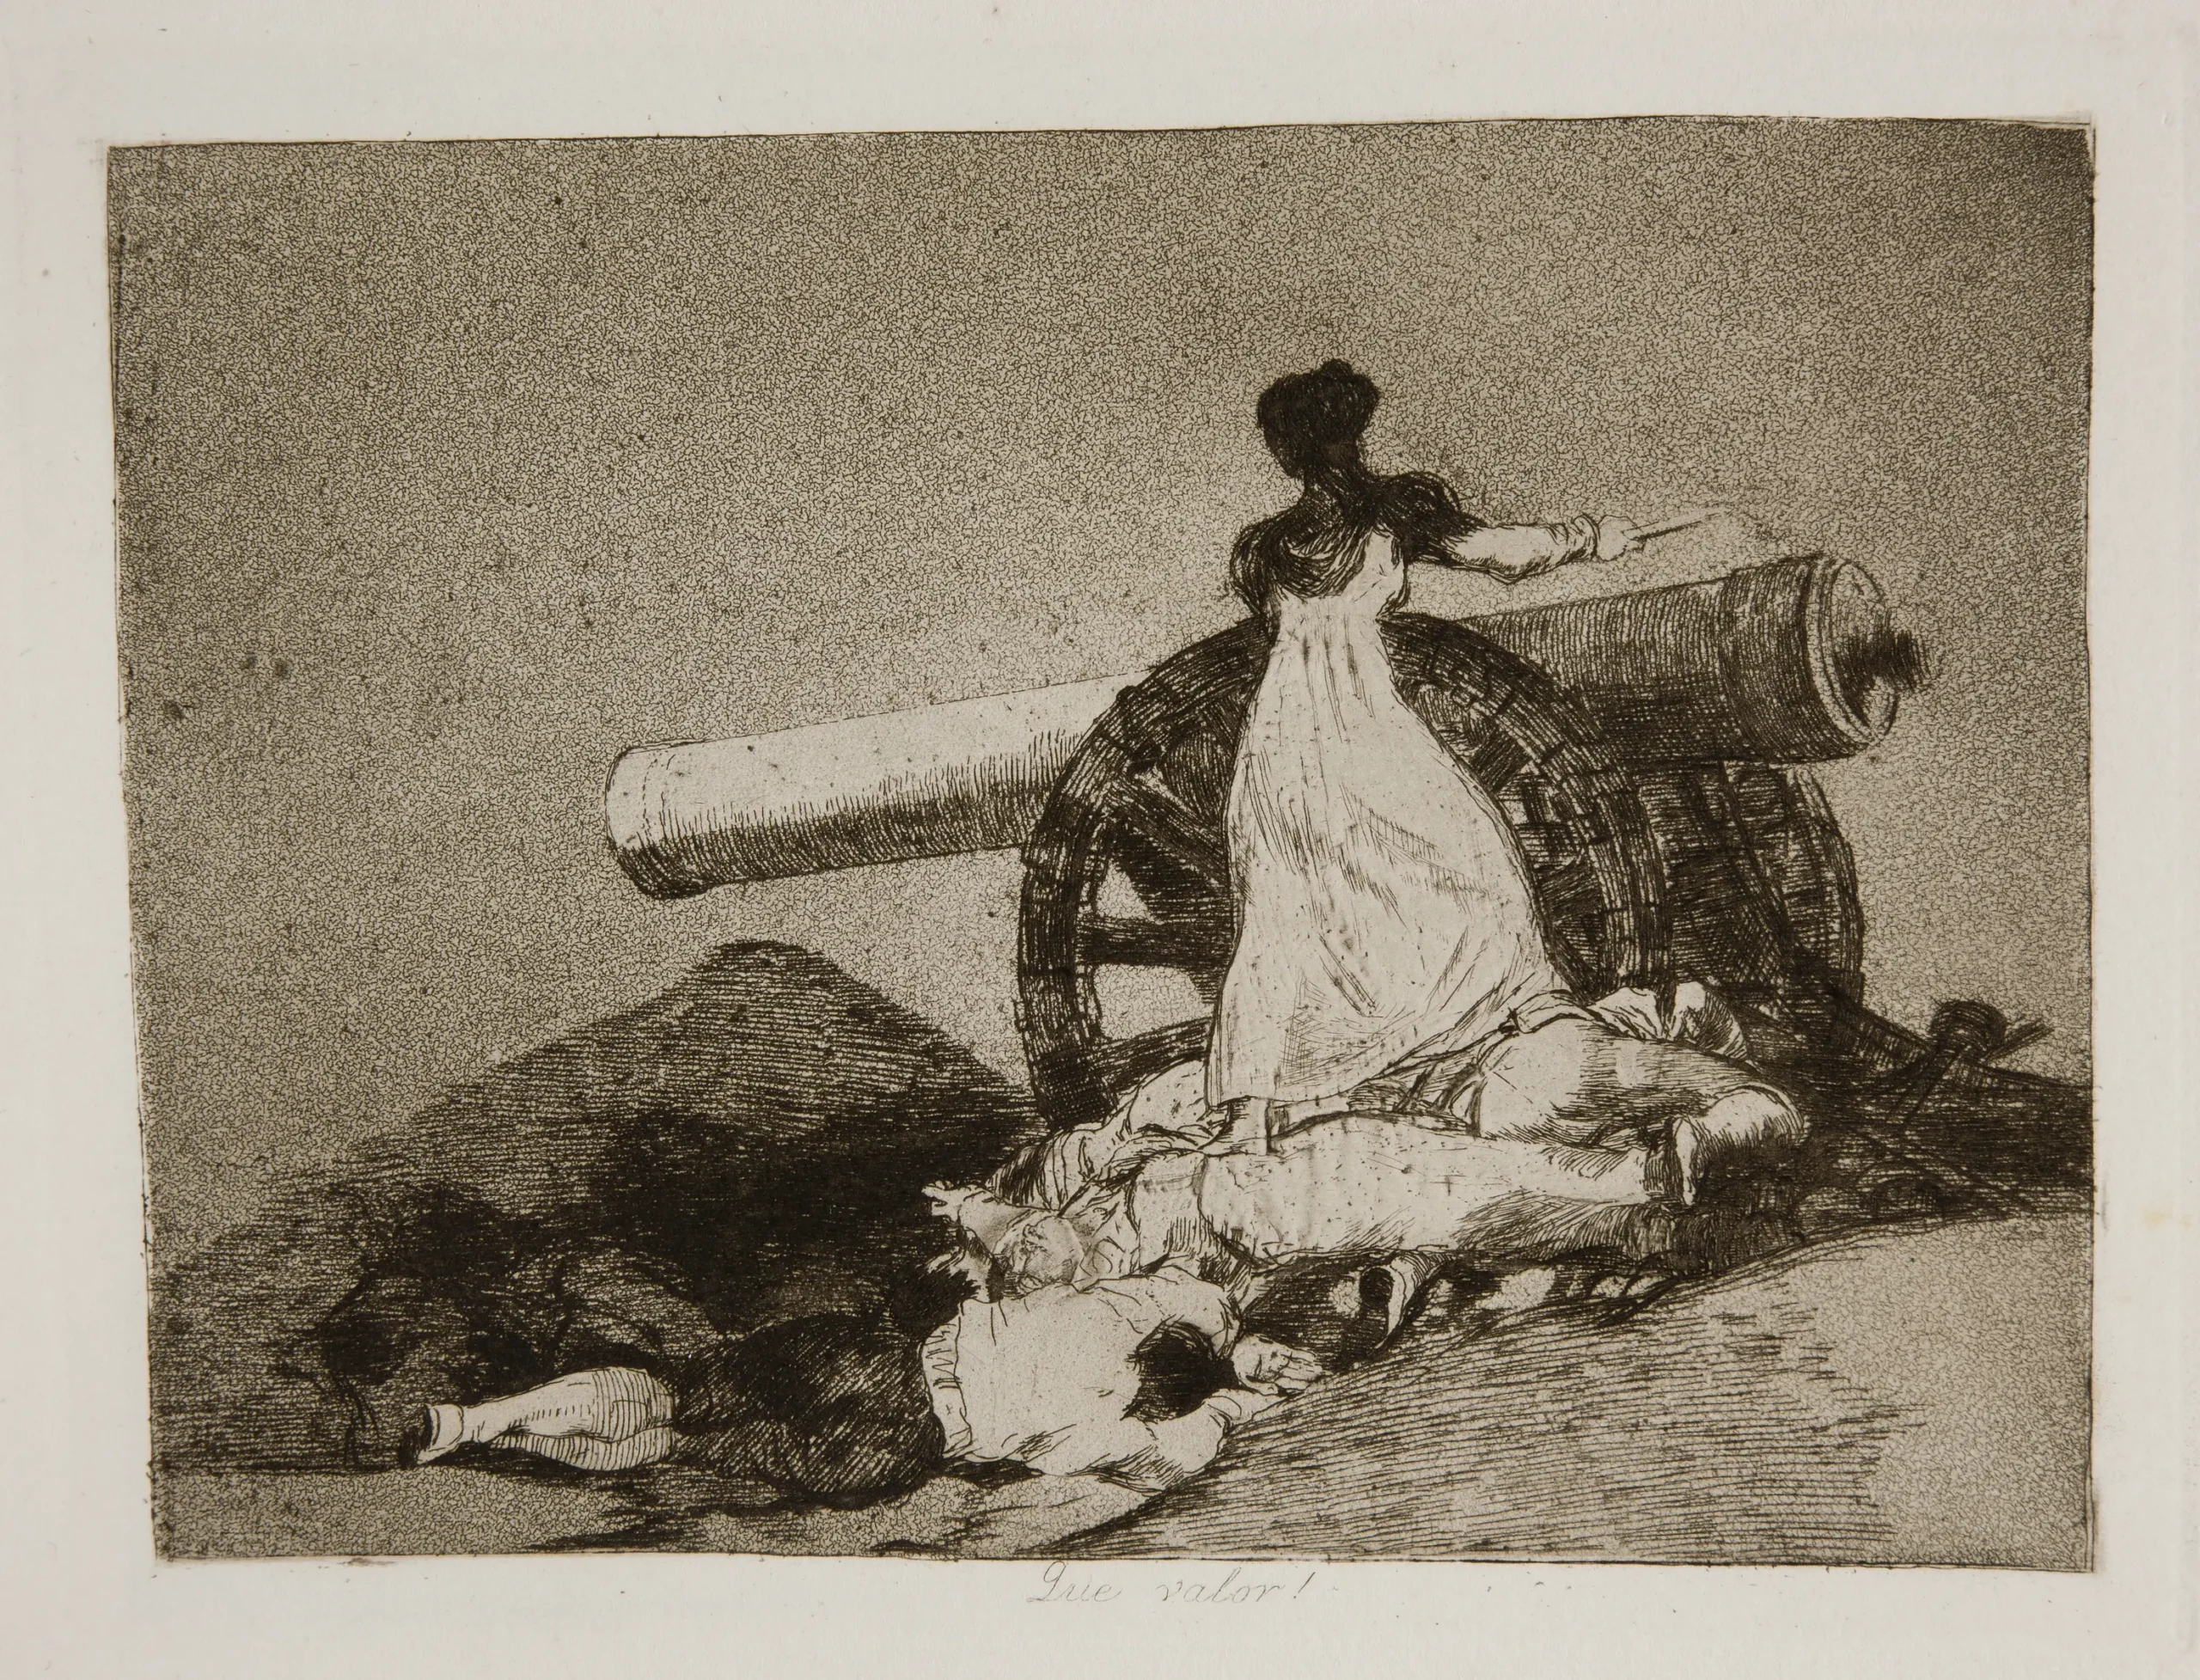 desastres de la guerra goya museo del prado - Qué representan los desastres de la guerra de Goya